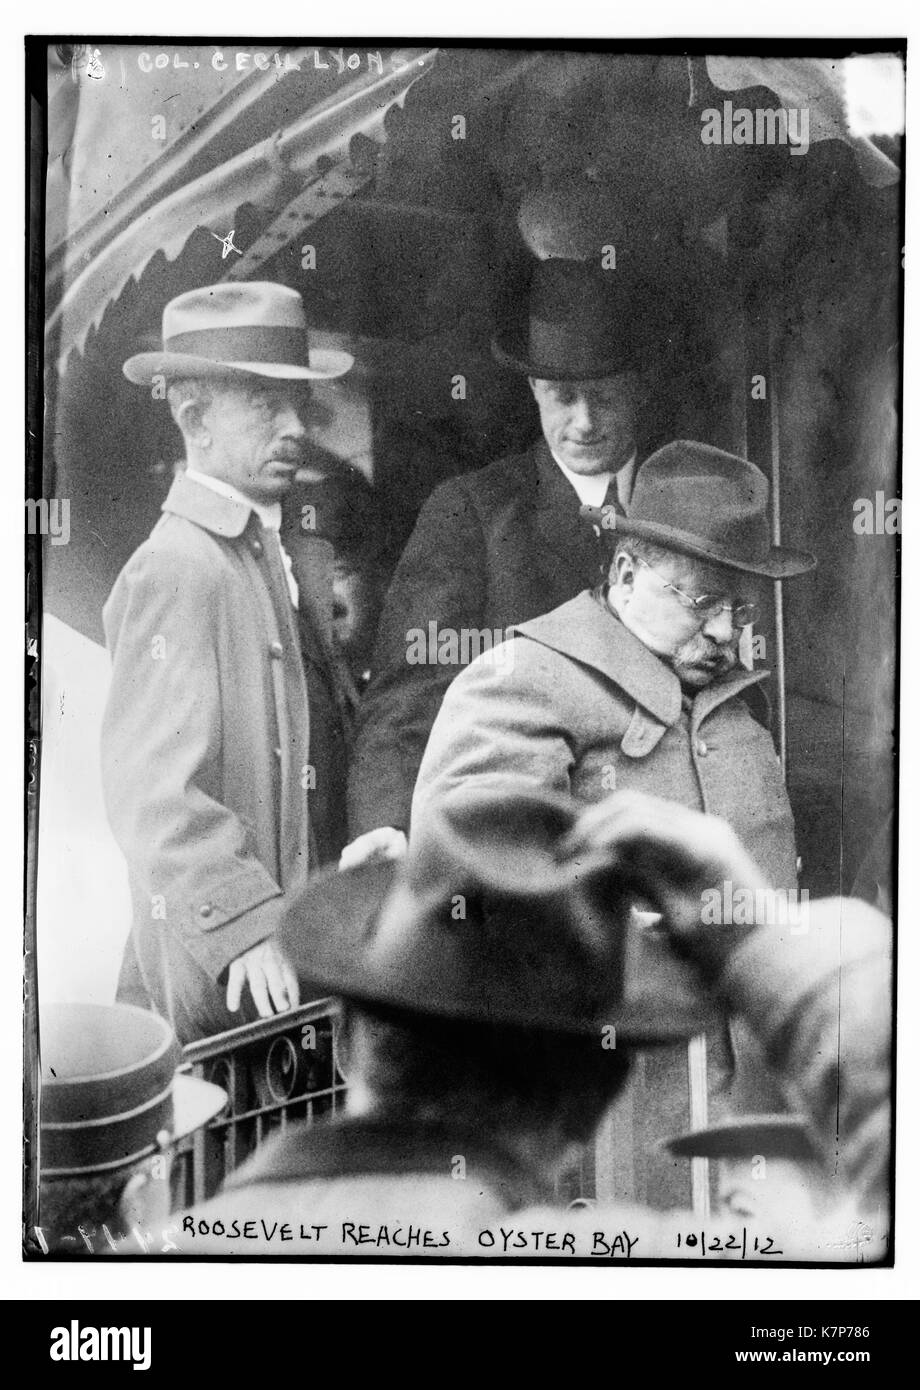 Foto zeigt Präsident Teddy Roosevelt aus einen Zug bei der Oyster Bay, Long Island, nach einem Attentat von John F. Wohnz. Oberst Cecil Lyons ist hinter ihm auf dem Zug. 10/22/12. Stockfoto